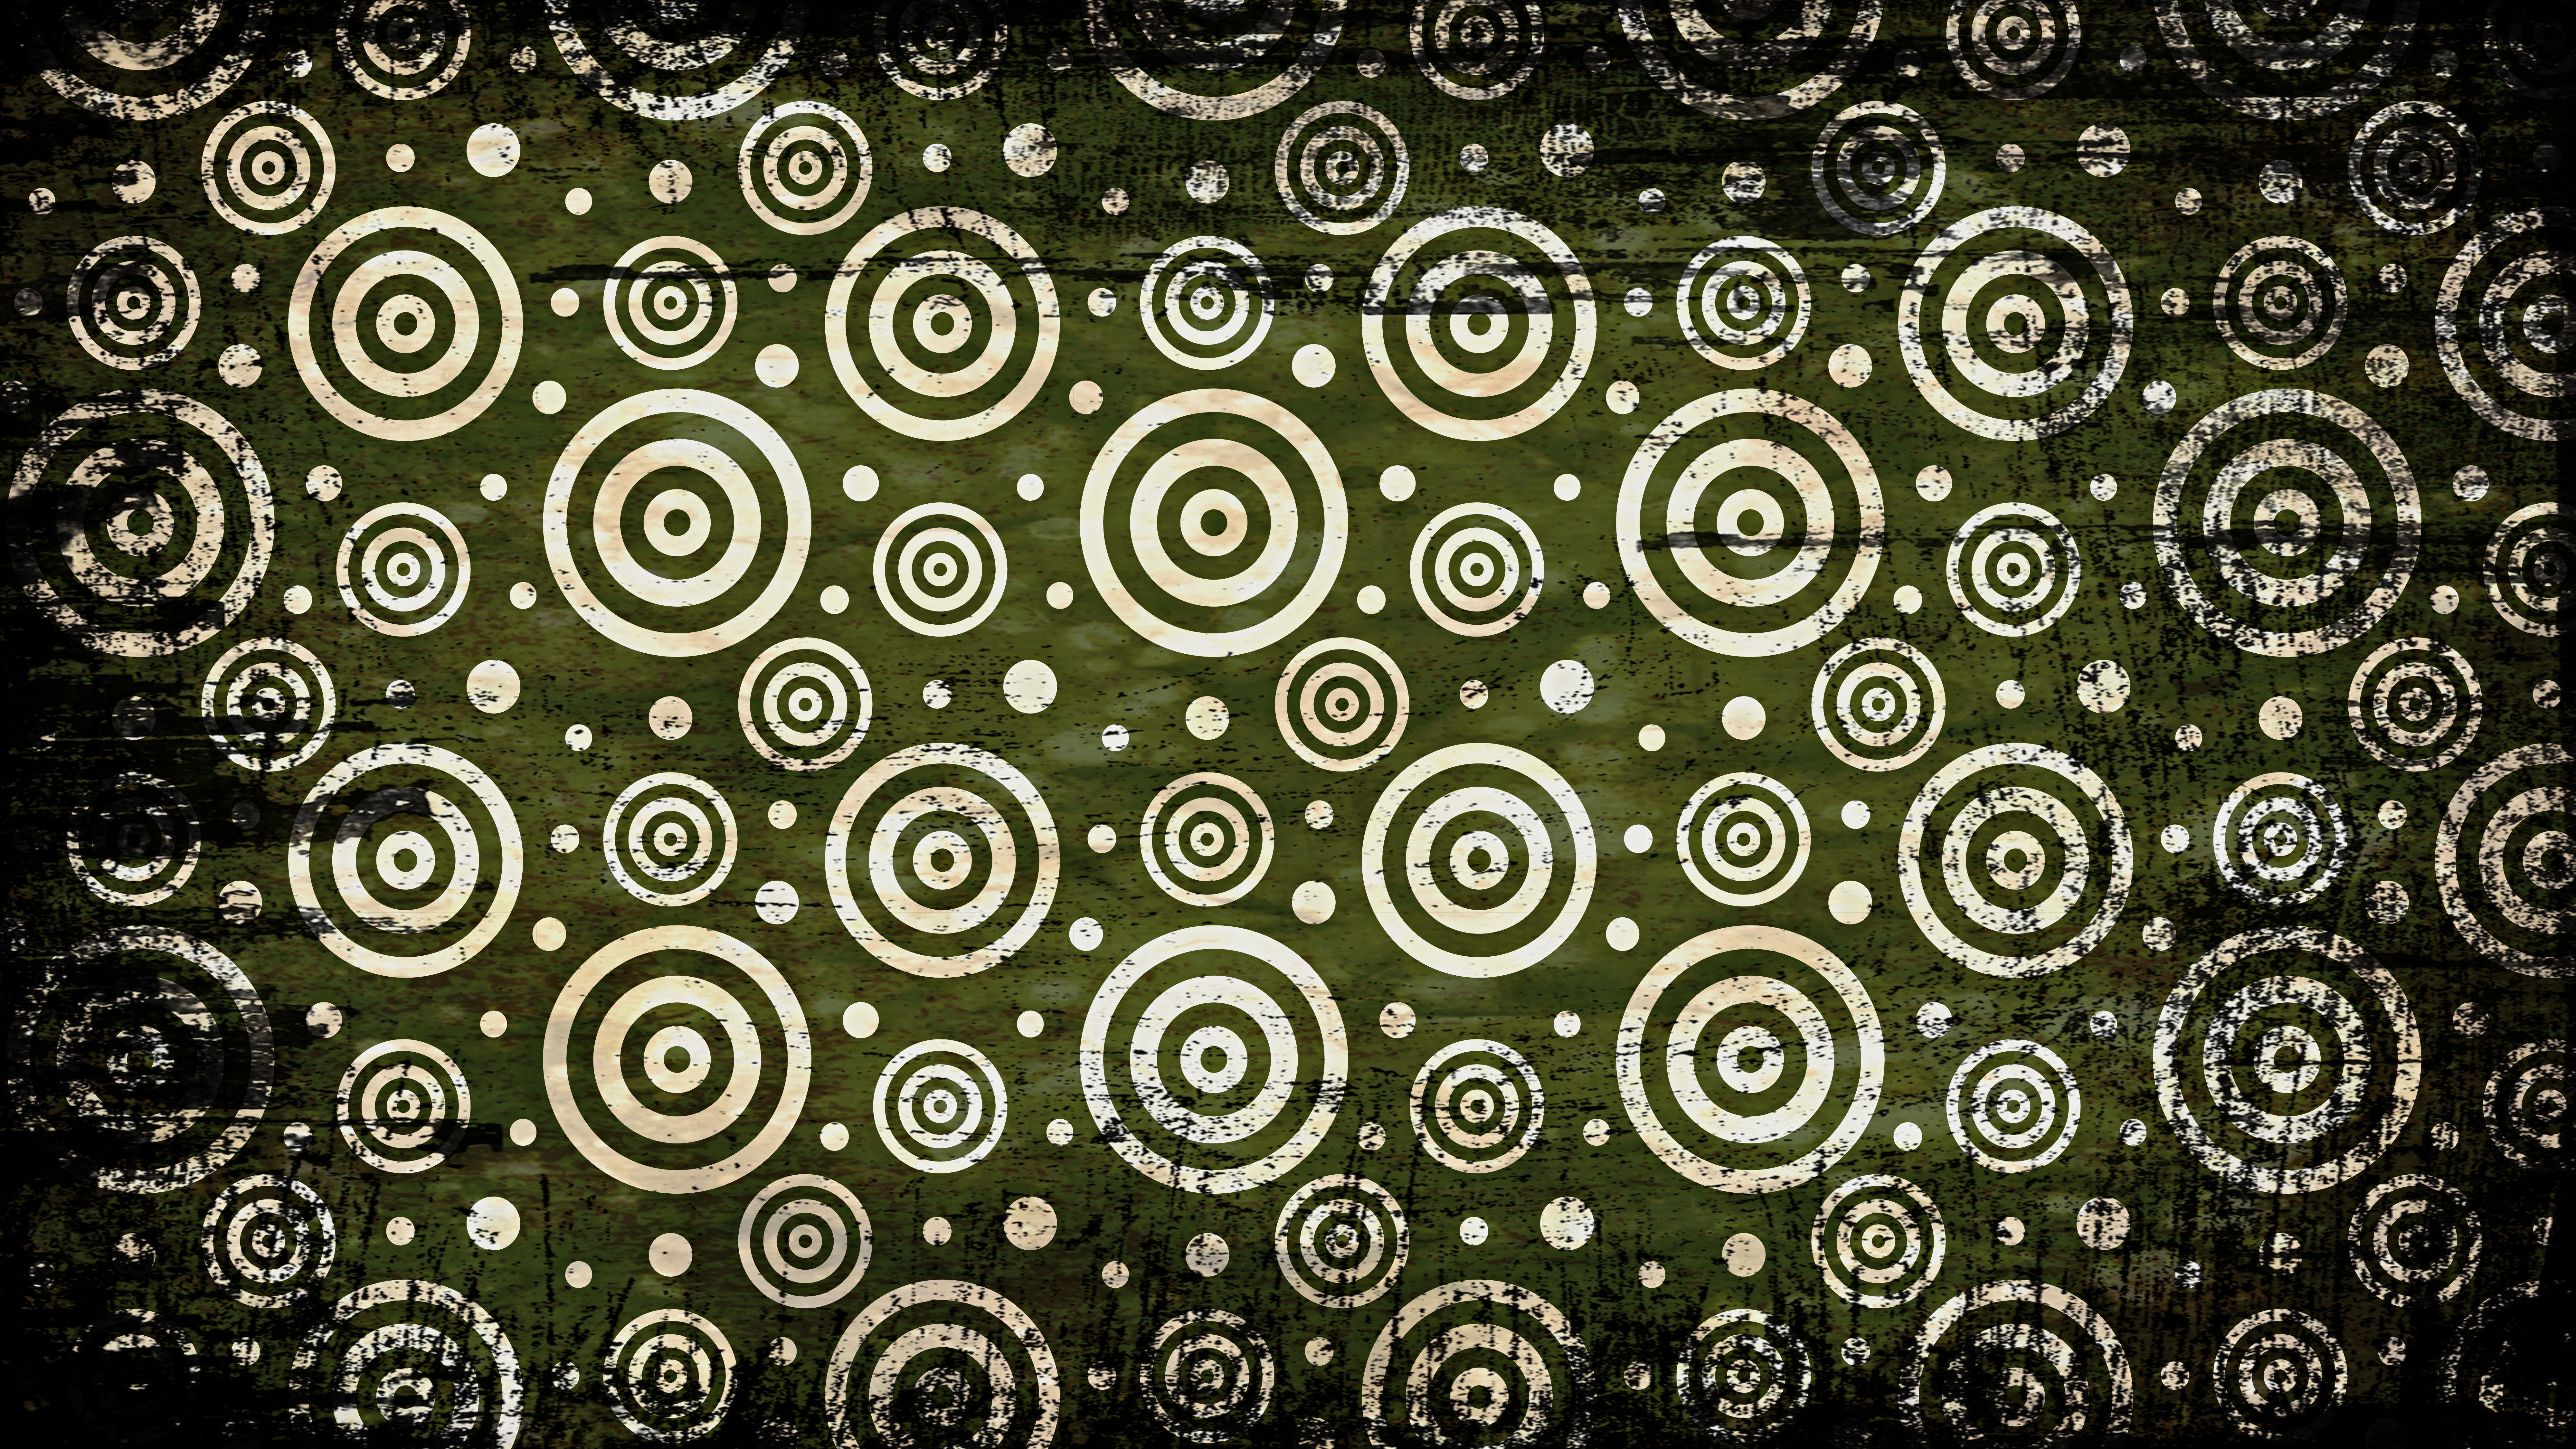 Green Black and White Grunge Geometric Circle Wallpaper Pattern Design